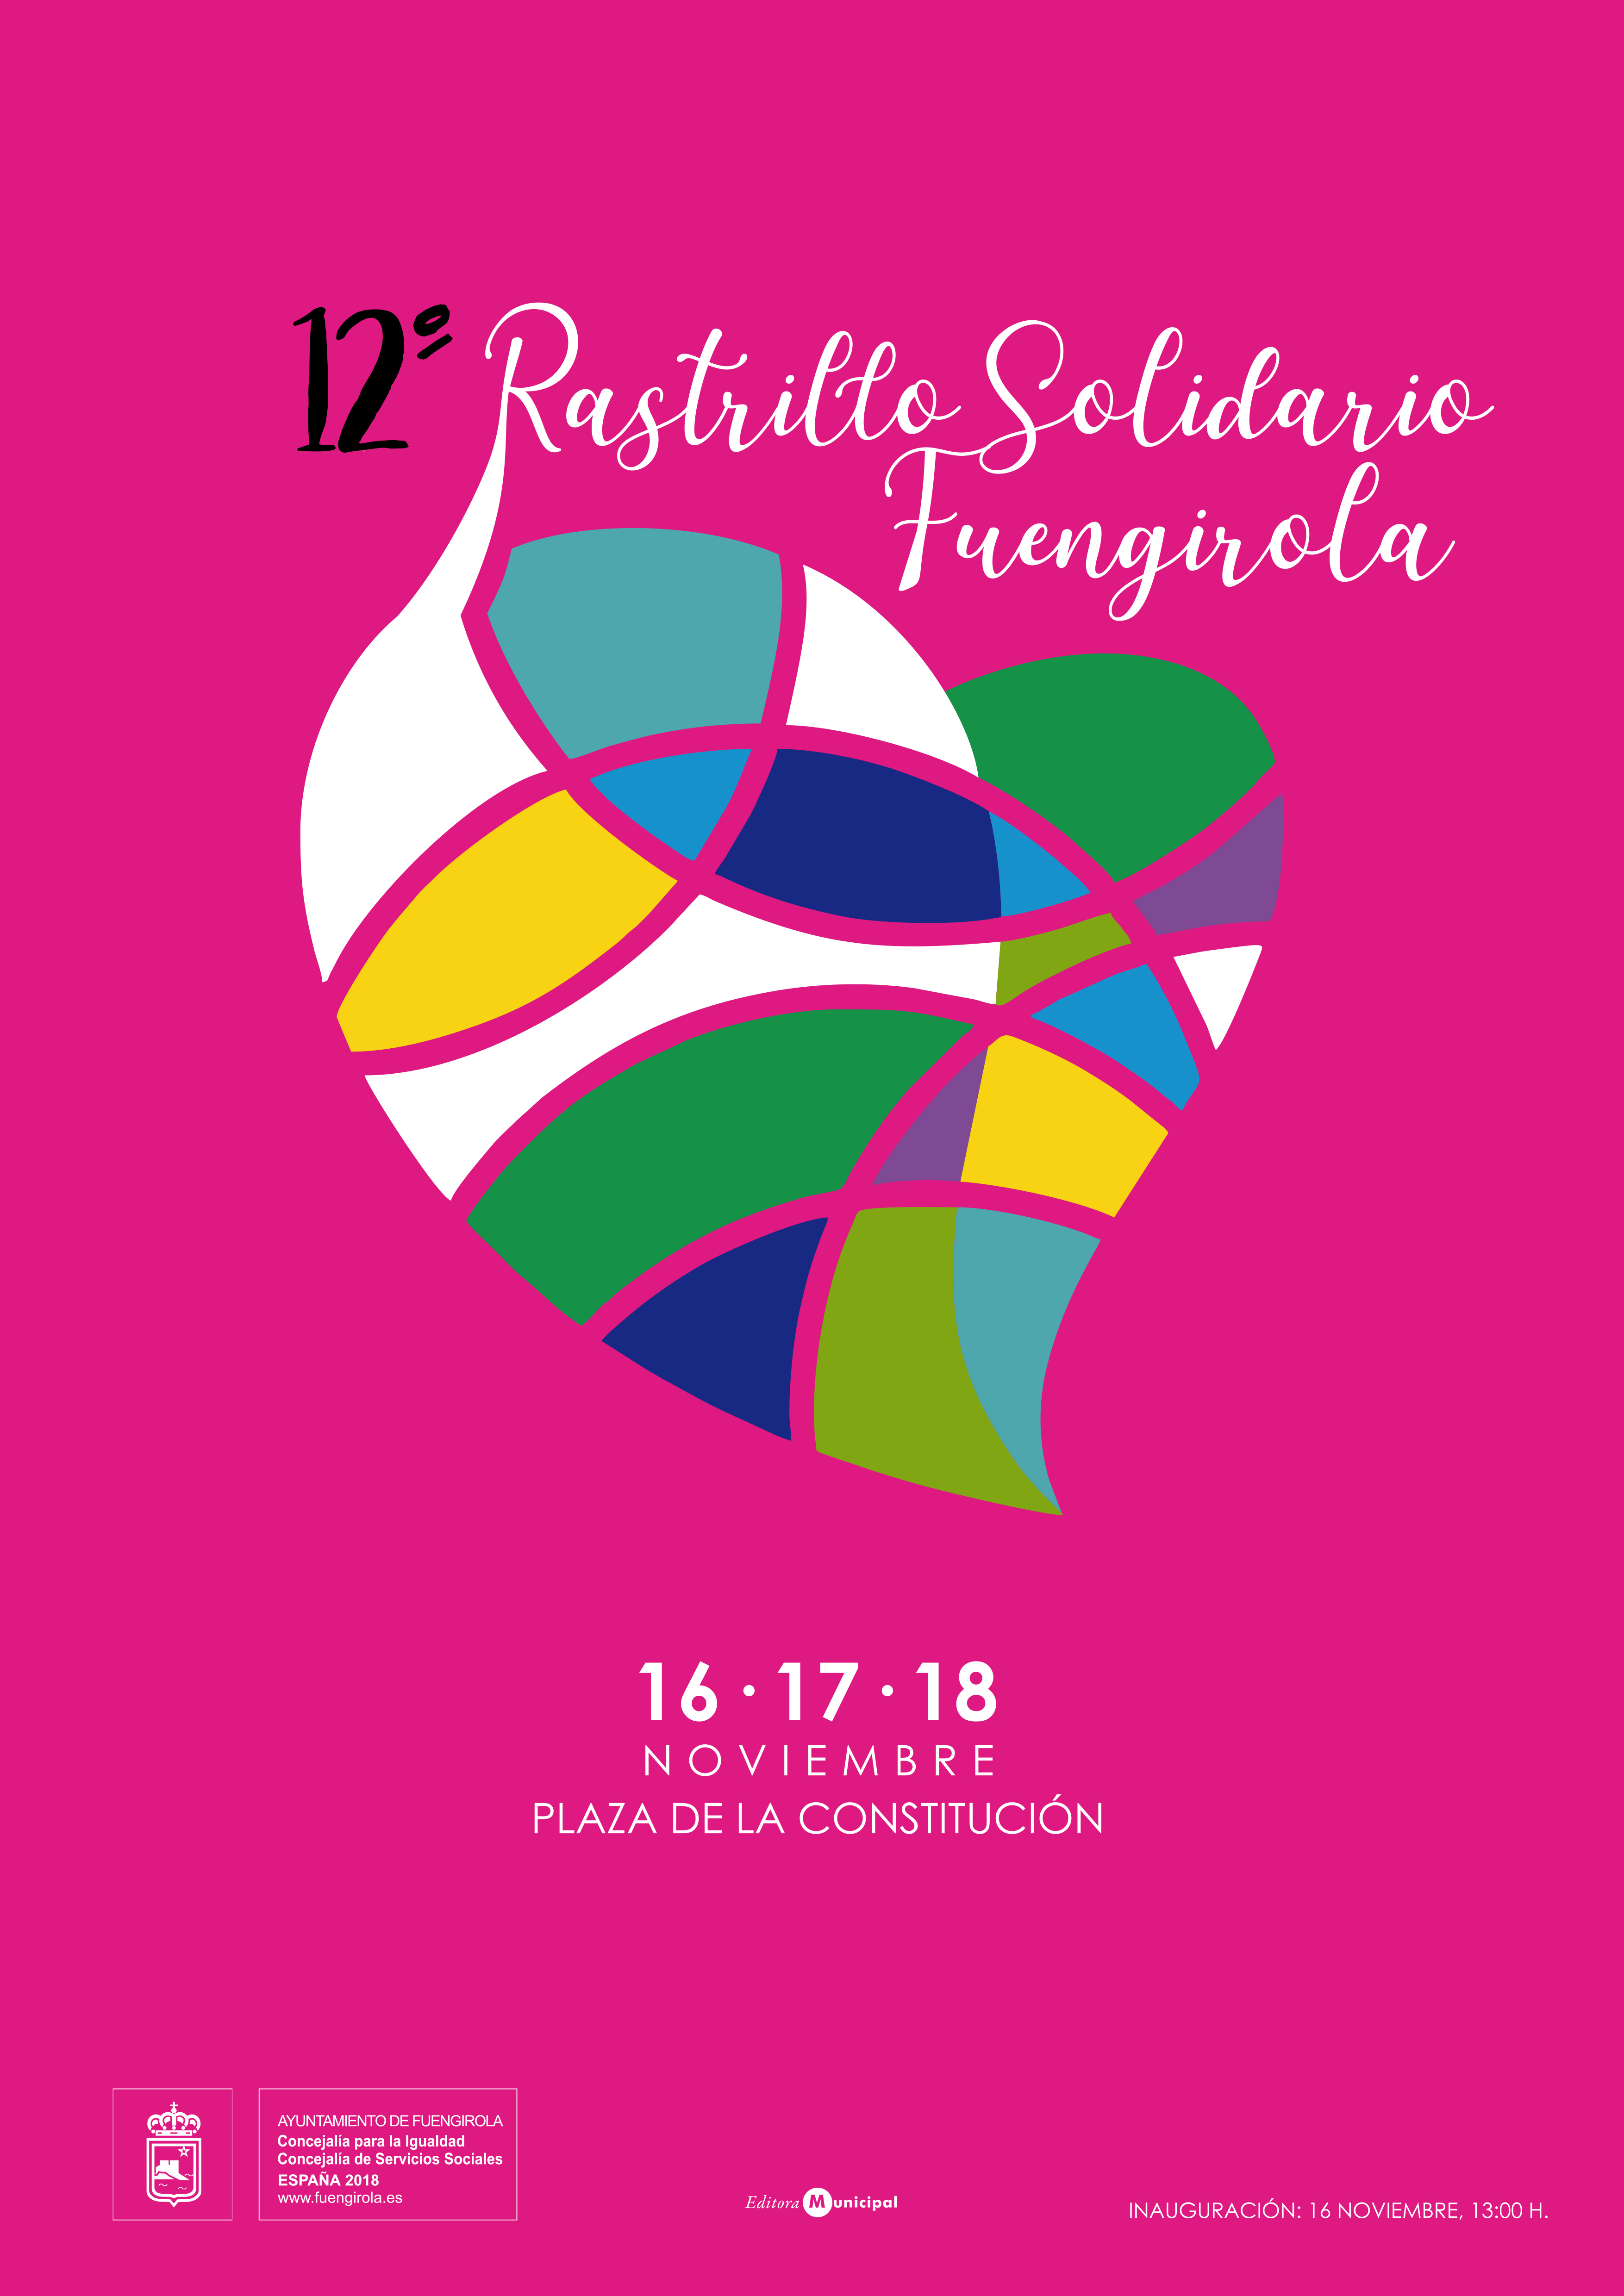 Rastrillo Solidario del Ayuntamiento de Fuengirola